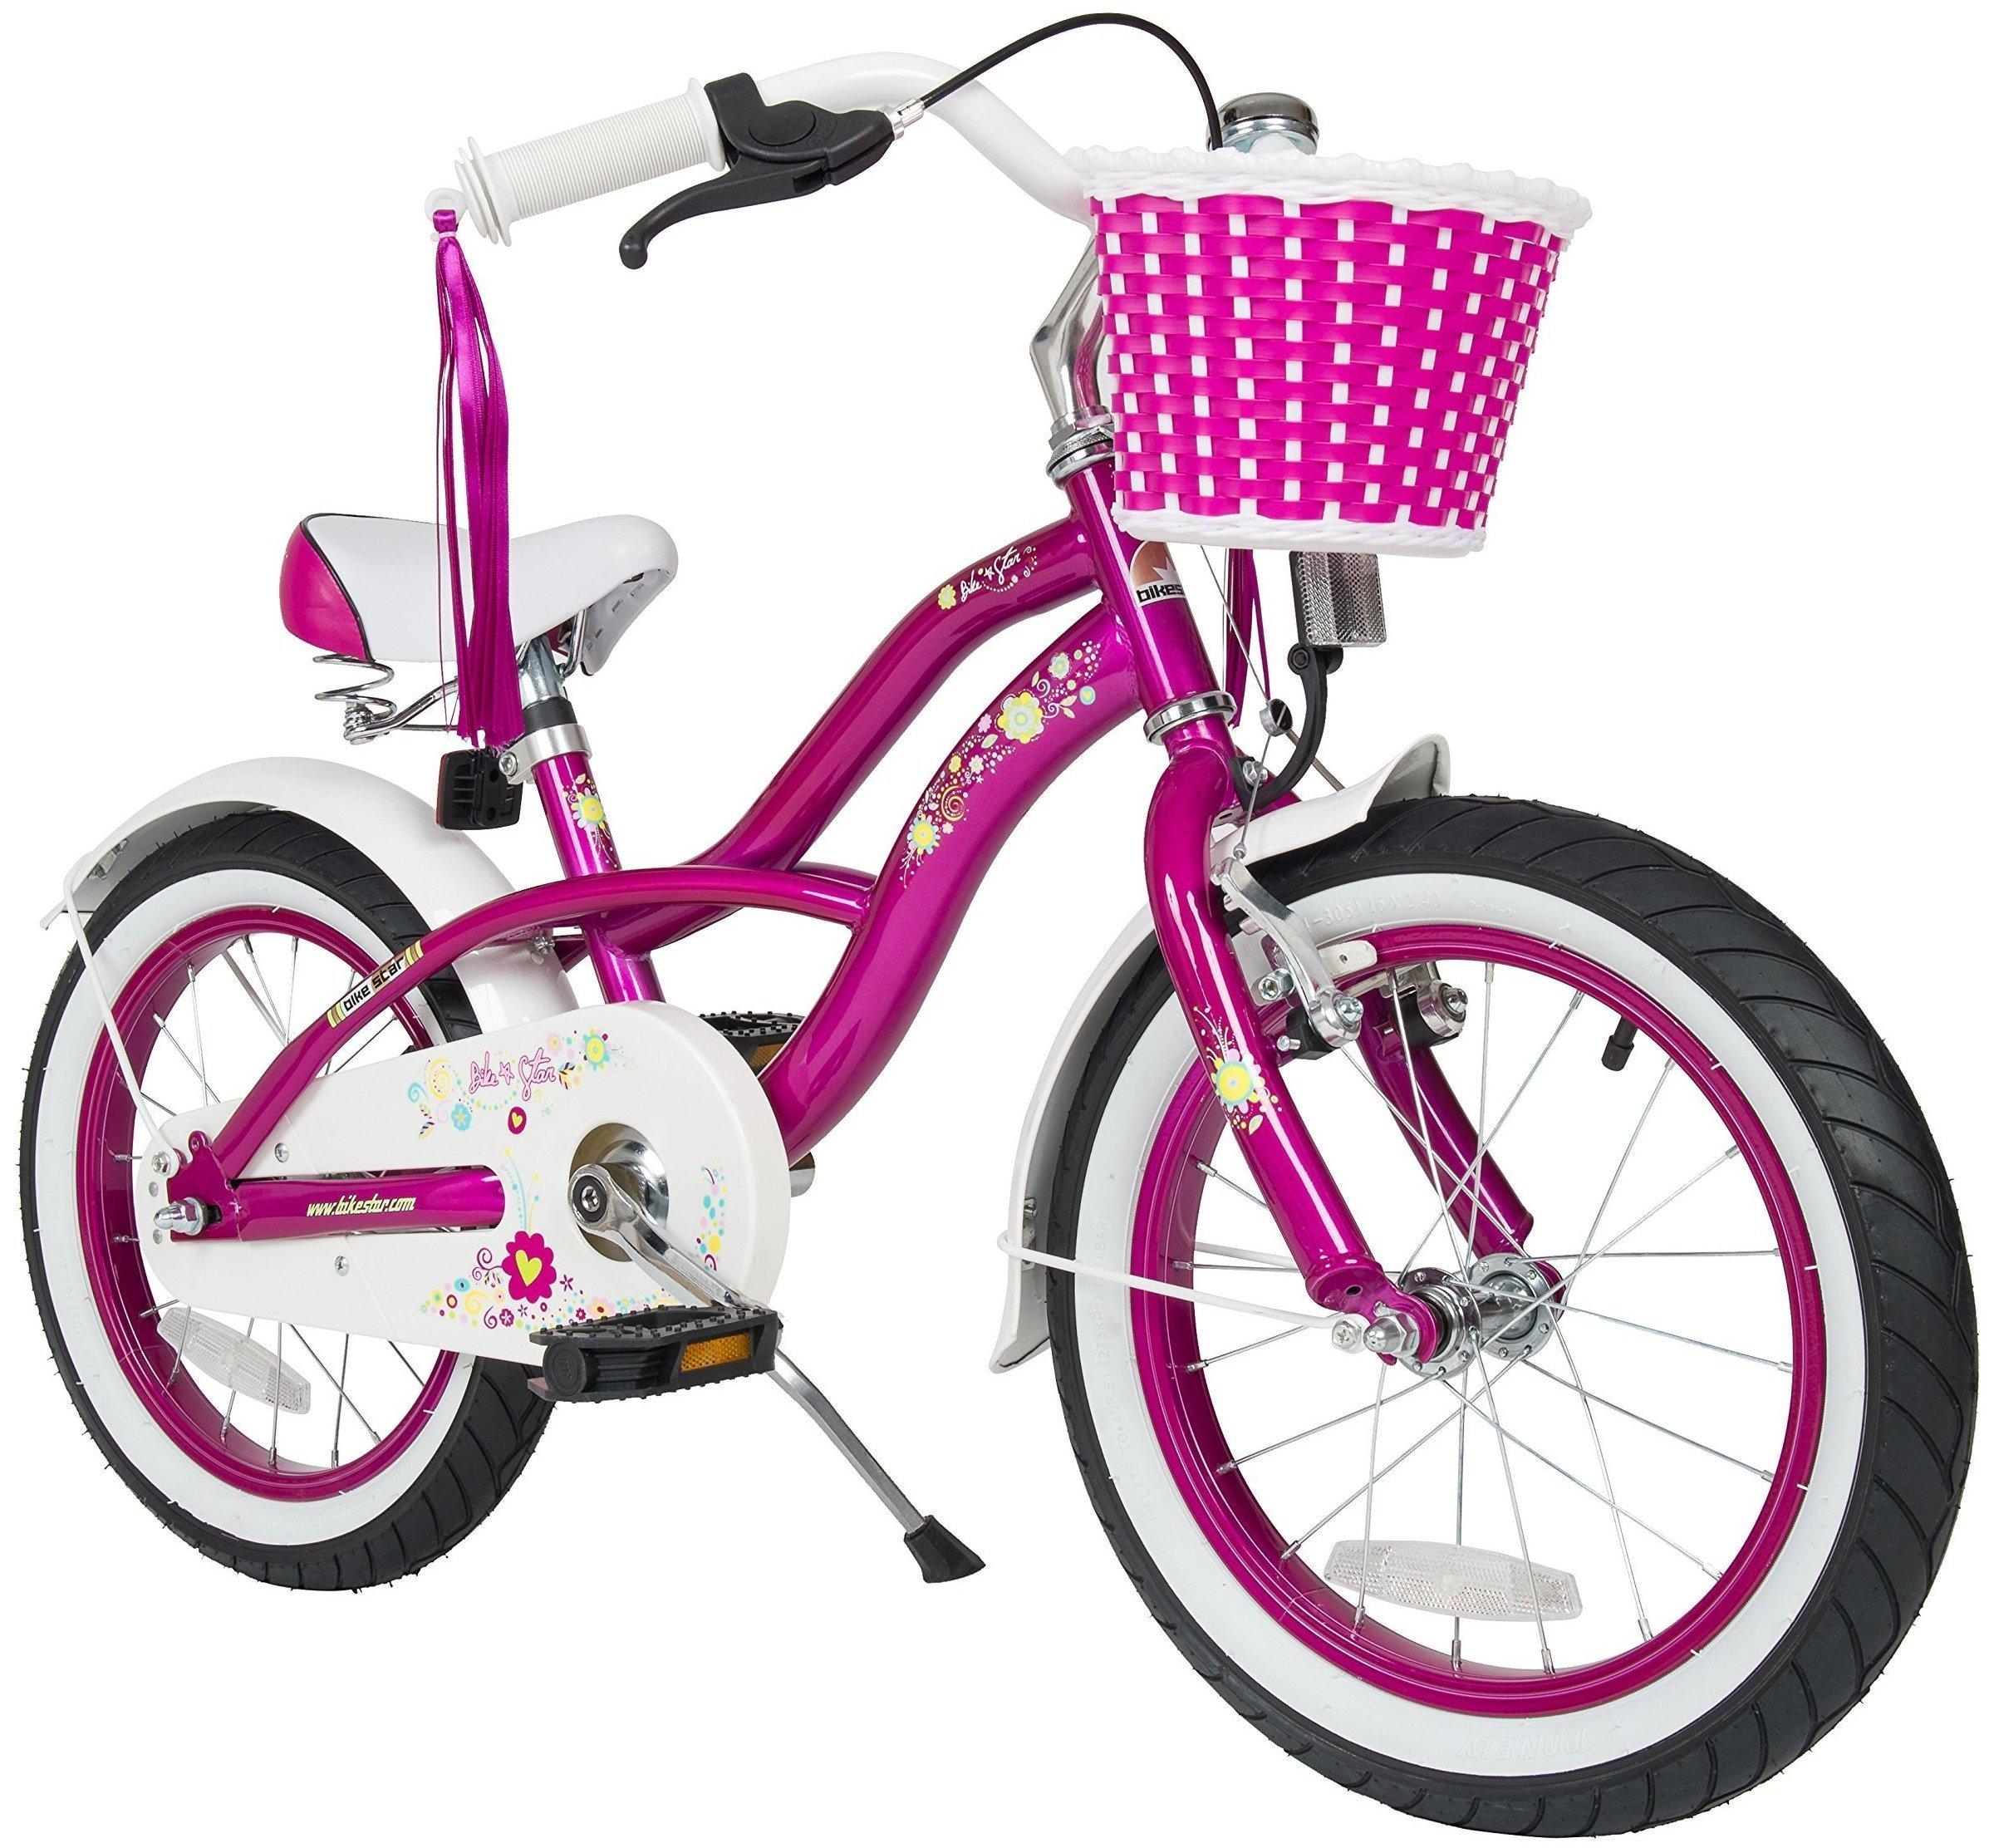 Star-Trademarks Bikestar 16" Deluxe Cruiser Creamy Violett Test - ❤️  Testbericht.de August 2022